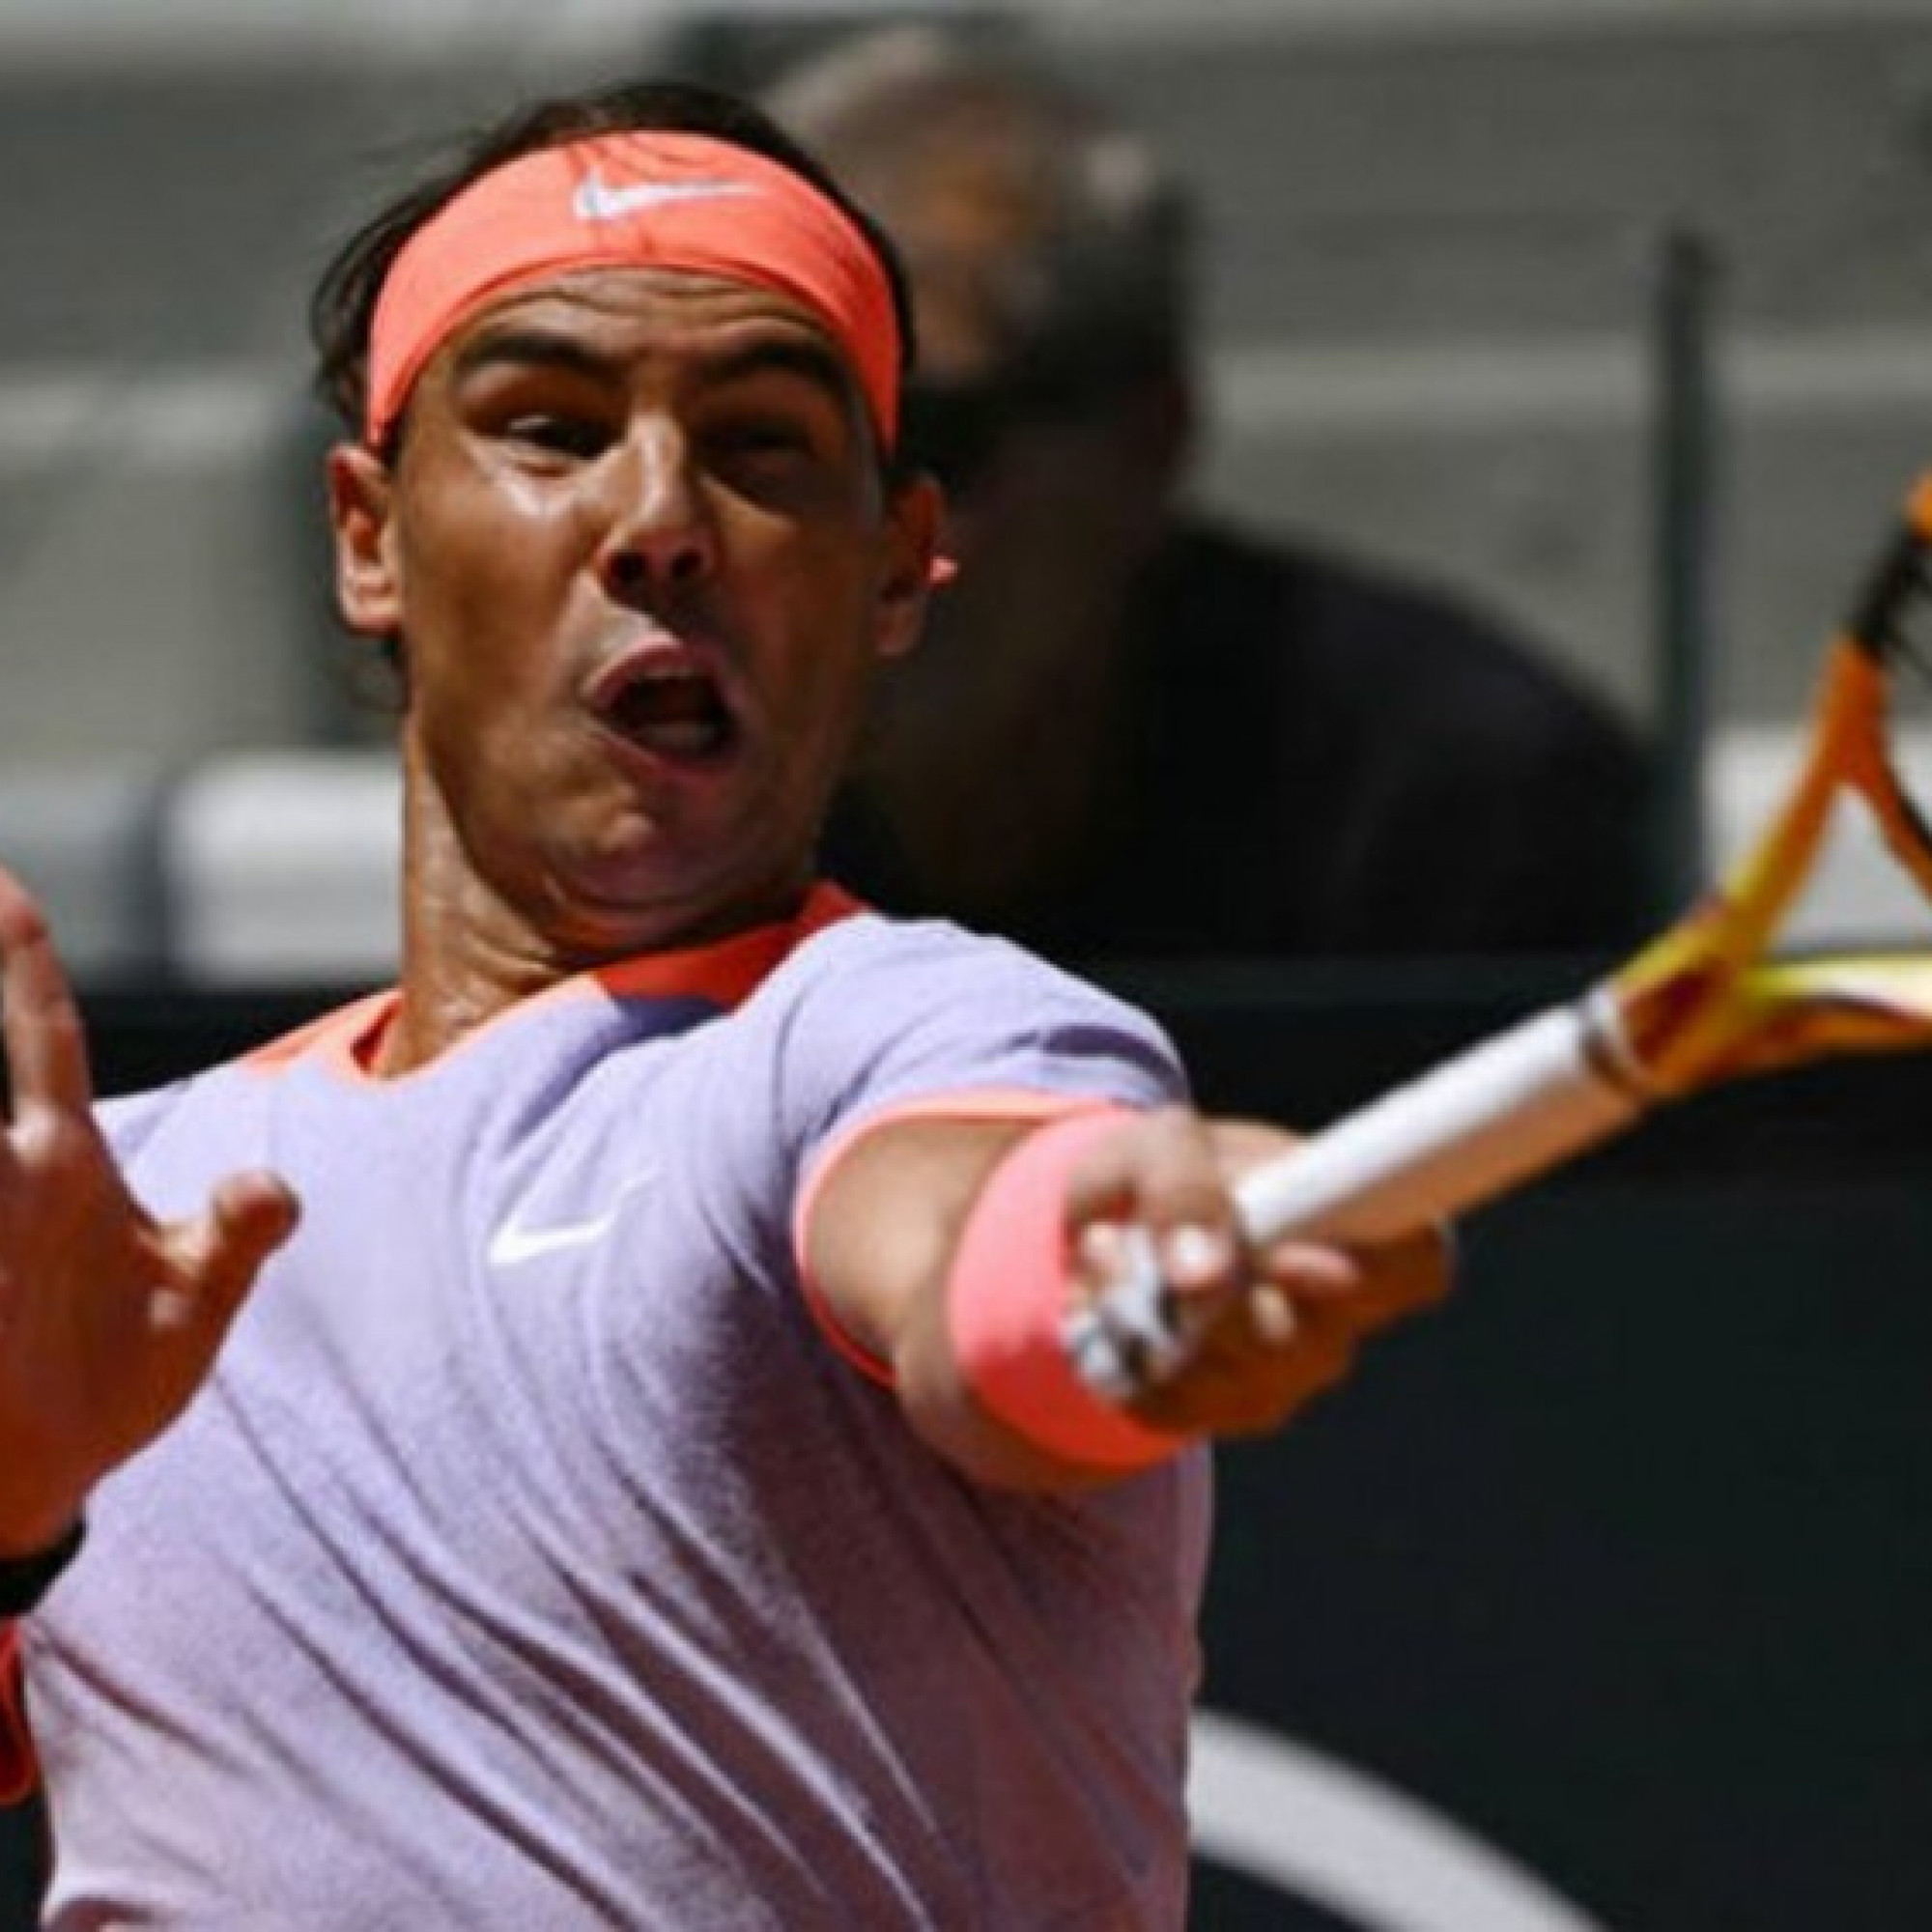 Video tennis Nadal - Hurkacz: Bỏ lỡ cơ hội sớm, chia tay tiếc nuối (Rome Open)